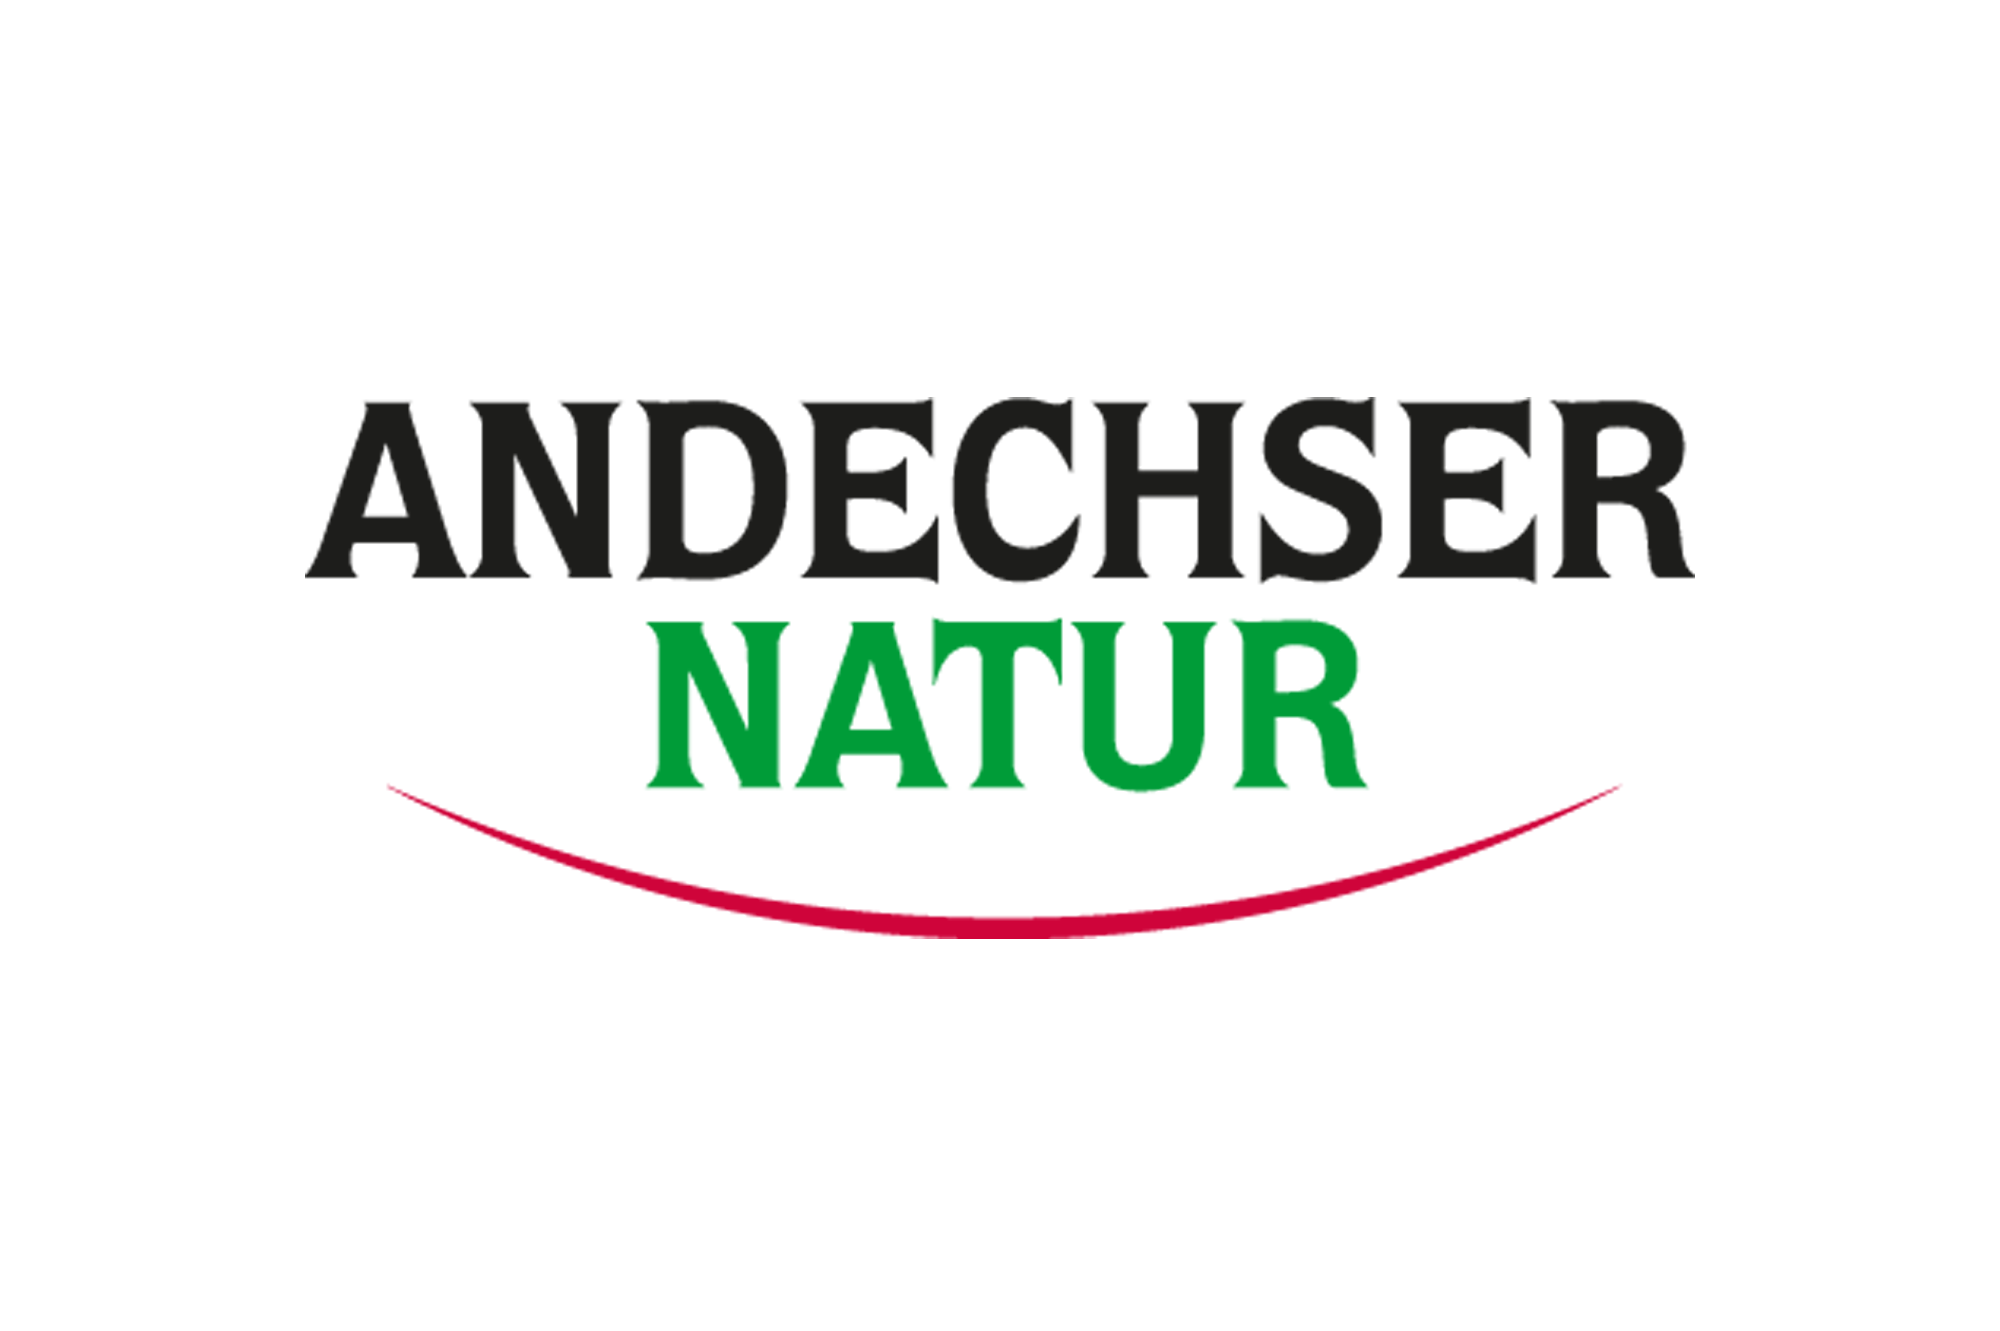 Andechser Natur Handelsblatt Marke des Jahres